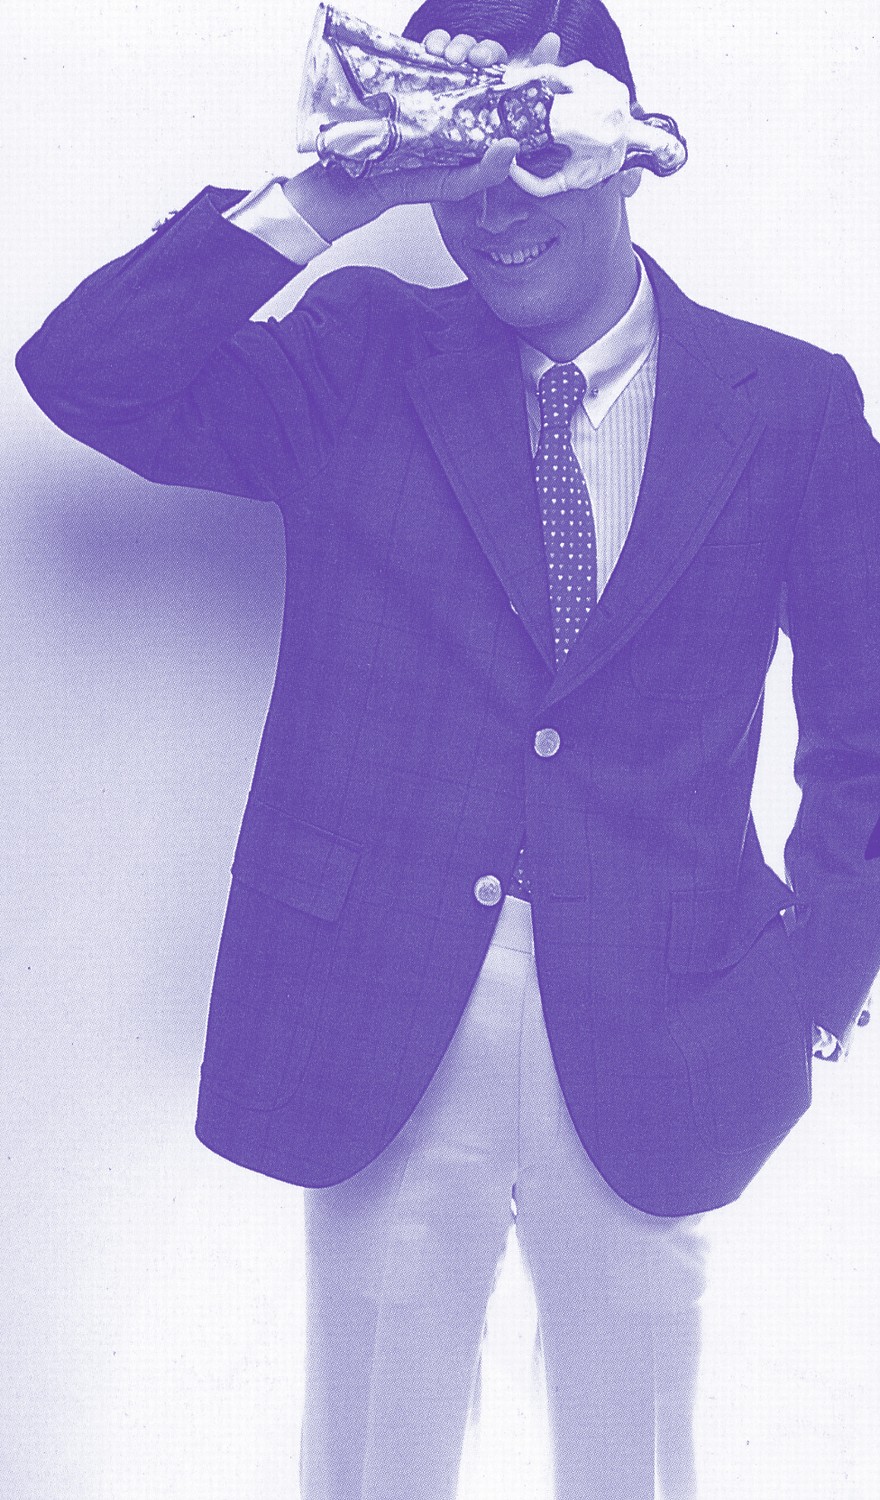 年代別 流行ファッション 物語 アイビー ルックの弟分的な存在だったプレッピー ルック 男子専科 Official 日本最古の男性ファッション誌